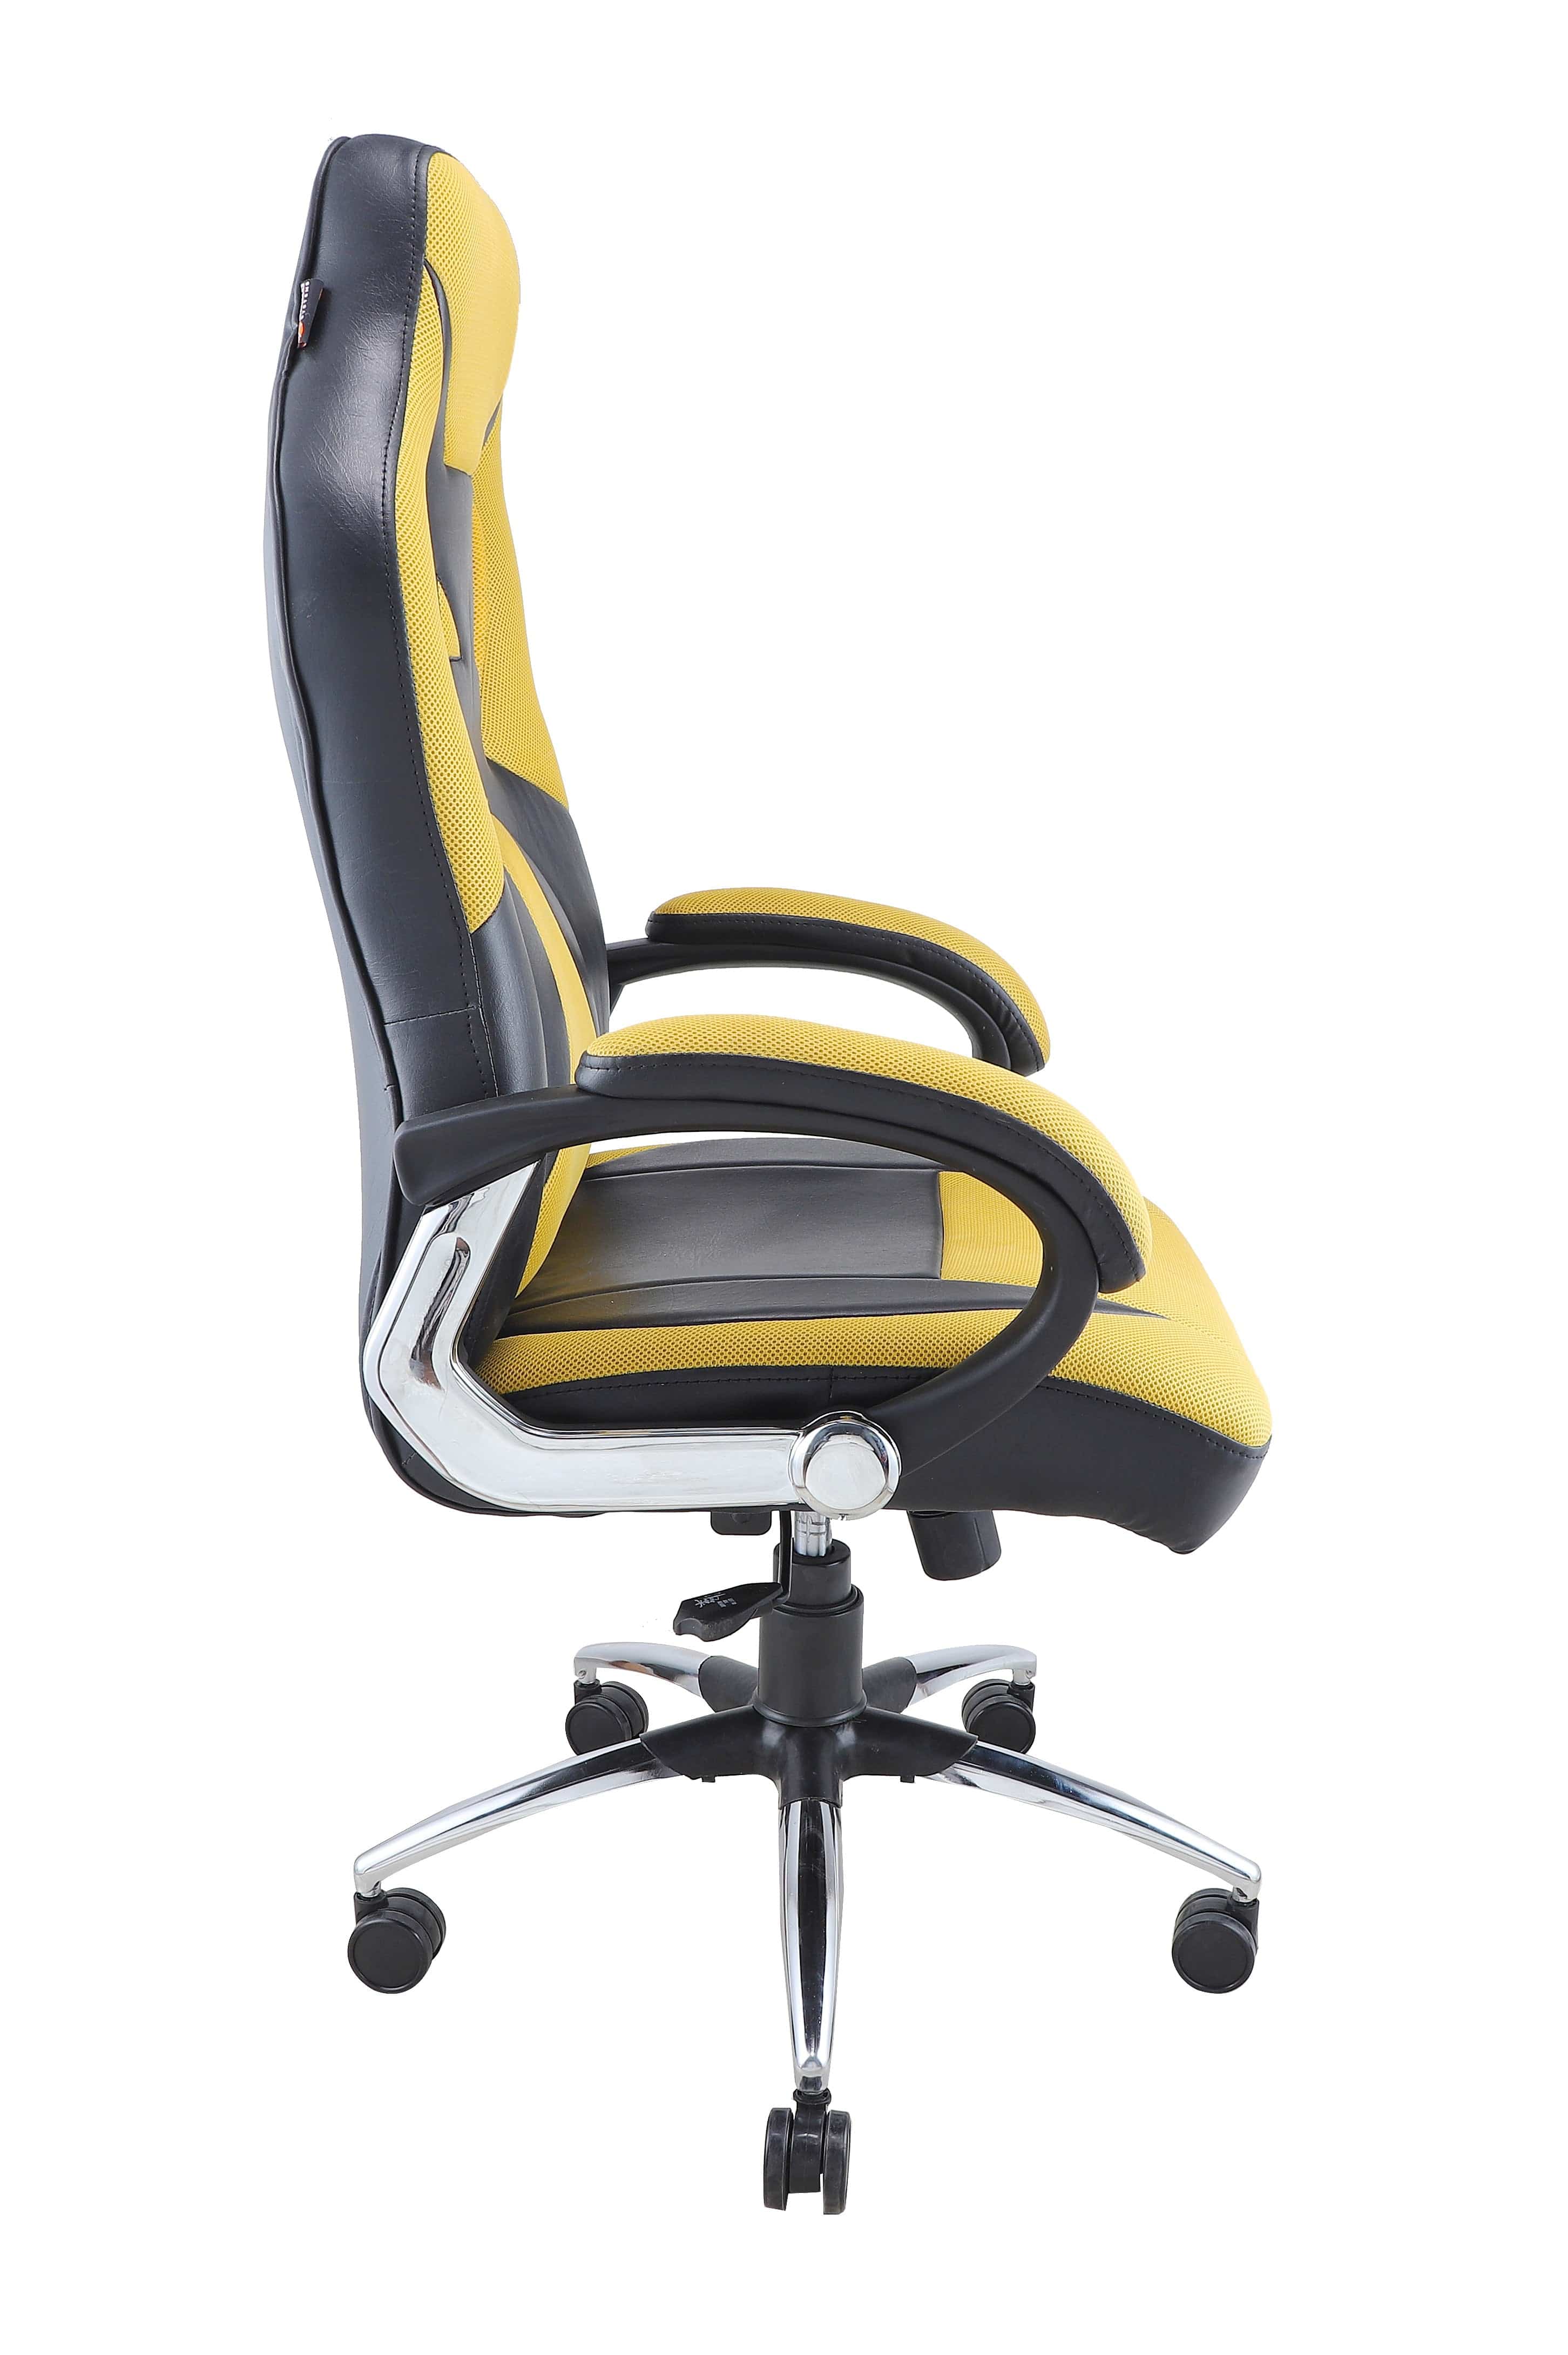 Adiko Designer Gaming Chair in Yellow